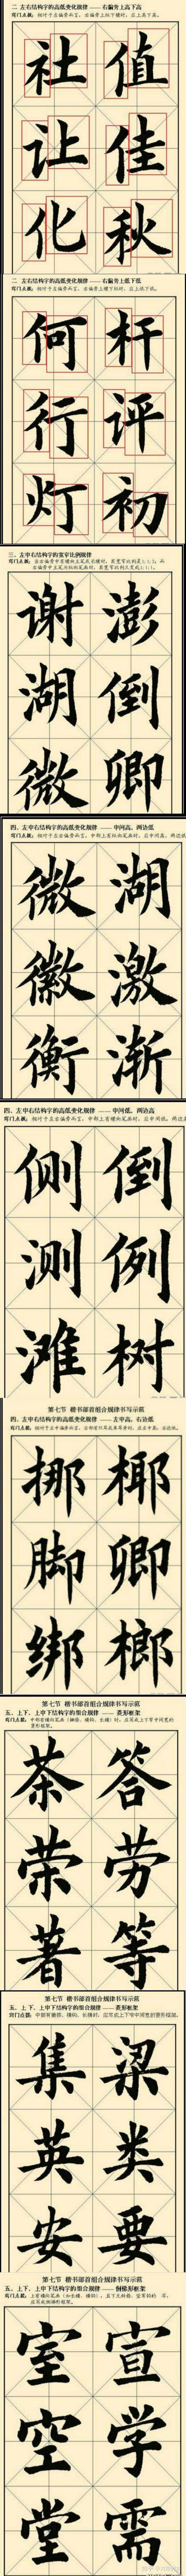 写好汉字 汉字结构组合规律图解 知乎